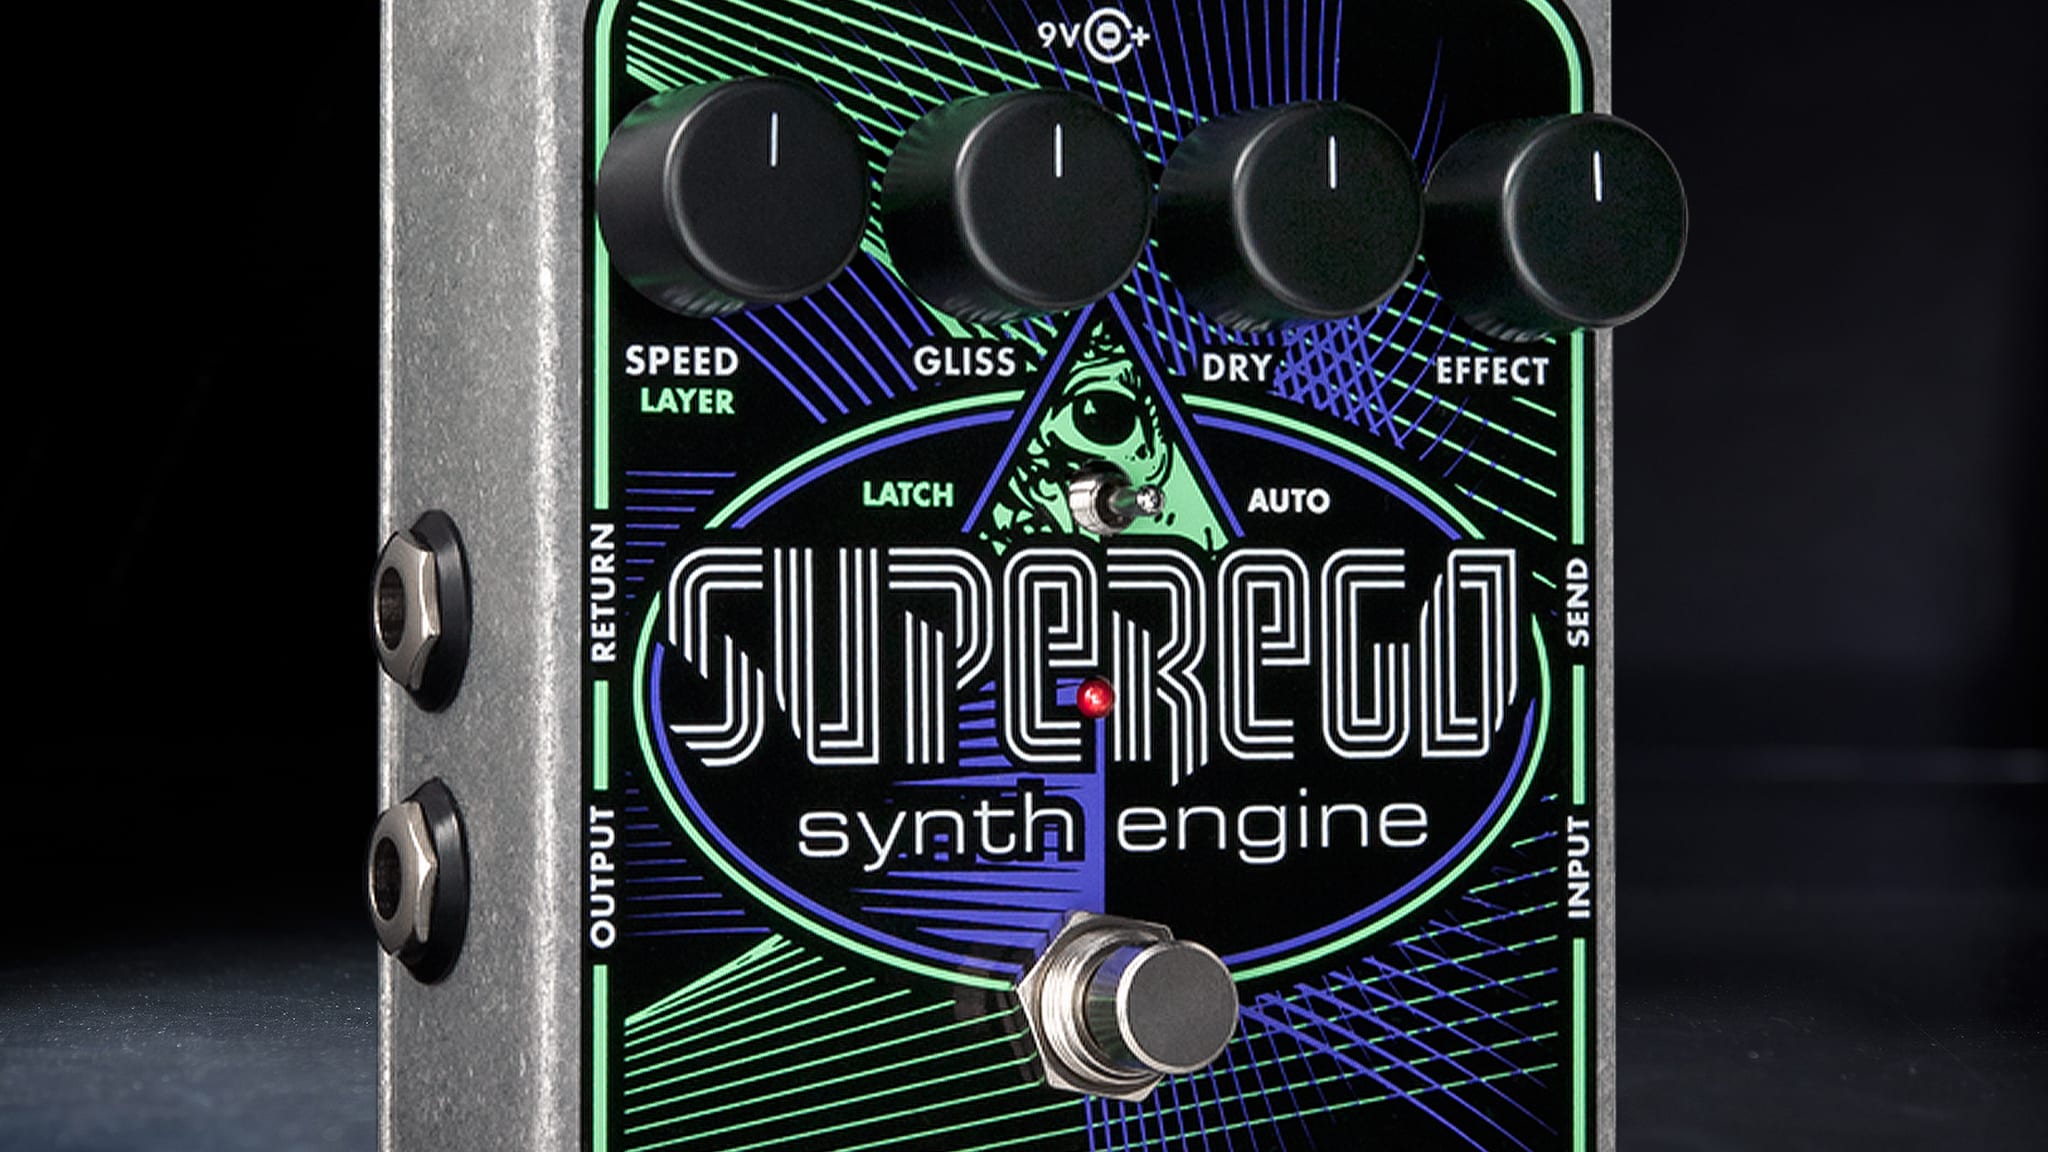 Superego | Synth Engine - Electro-Harmonix